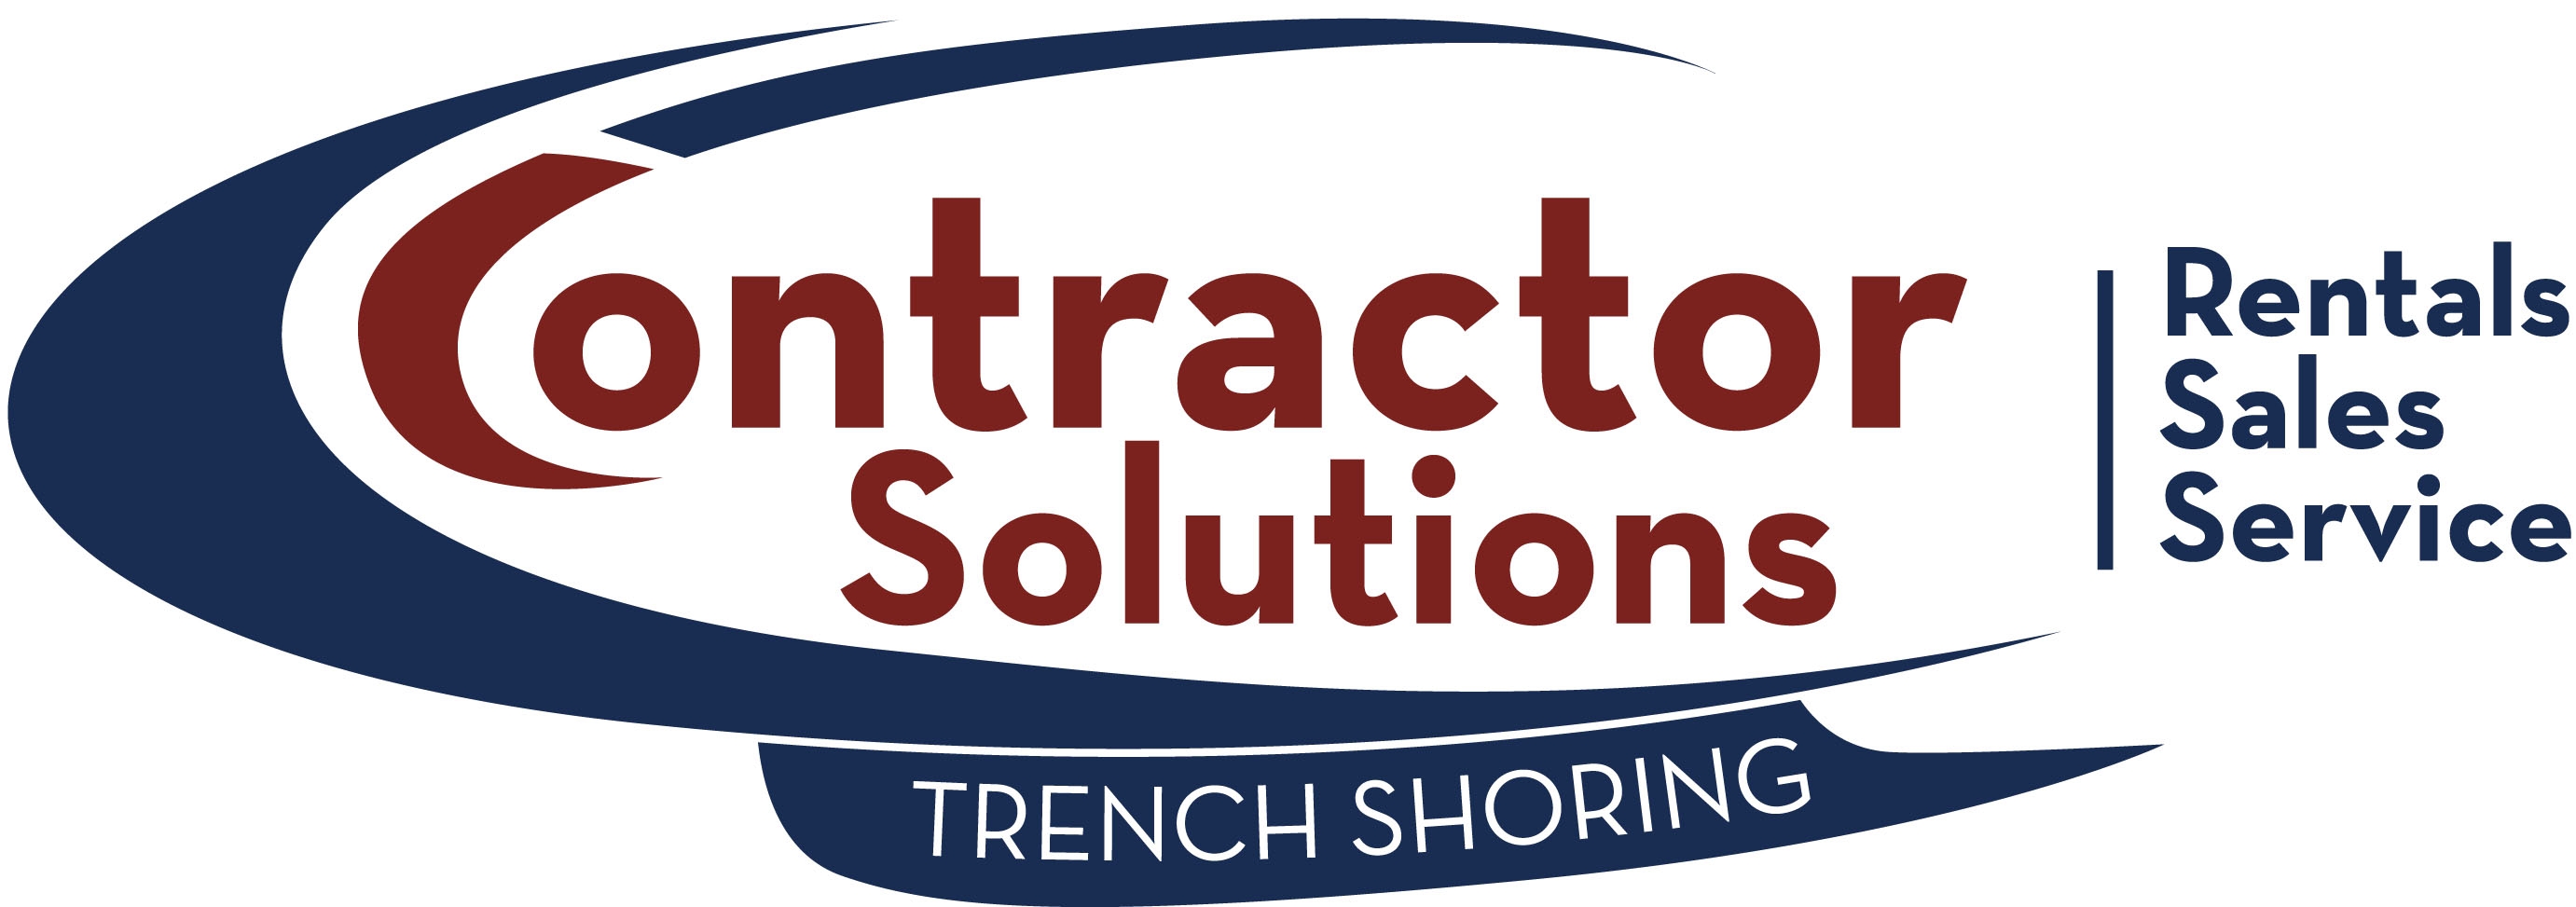 Contractors Solutions